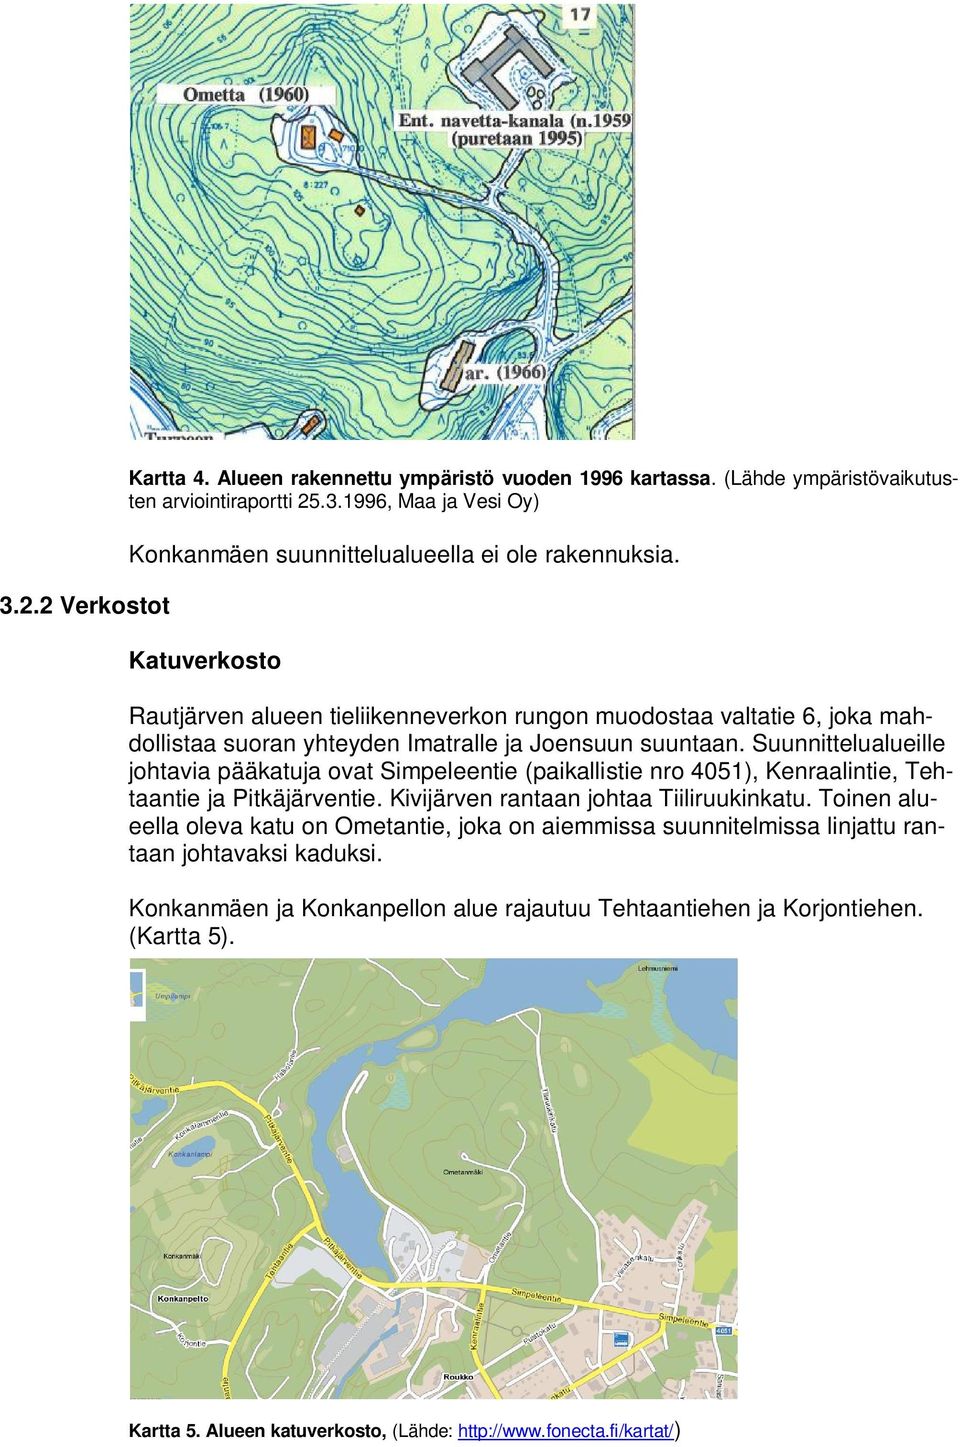 Suunnittelualueille johtavia pääkatuja ovat Simpeleentie (paikallistie nro 4051), Kenraalintie, Tehtaantie ja Pitkäjärventie. Kivijärven rantaan johtaa Tiiliruukinkatu.